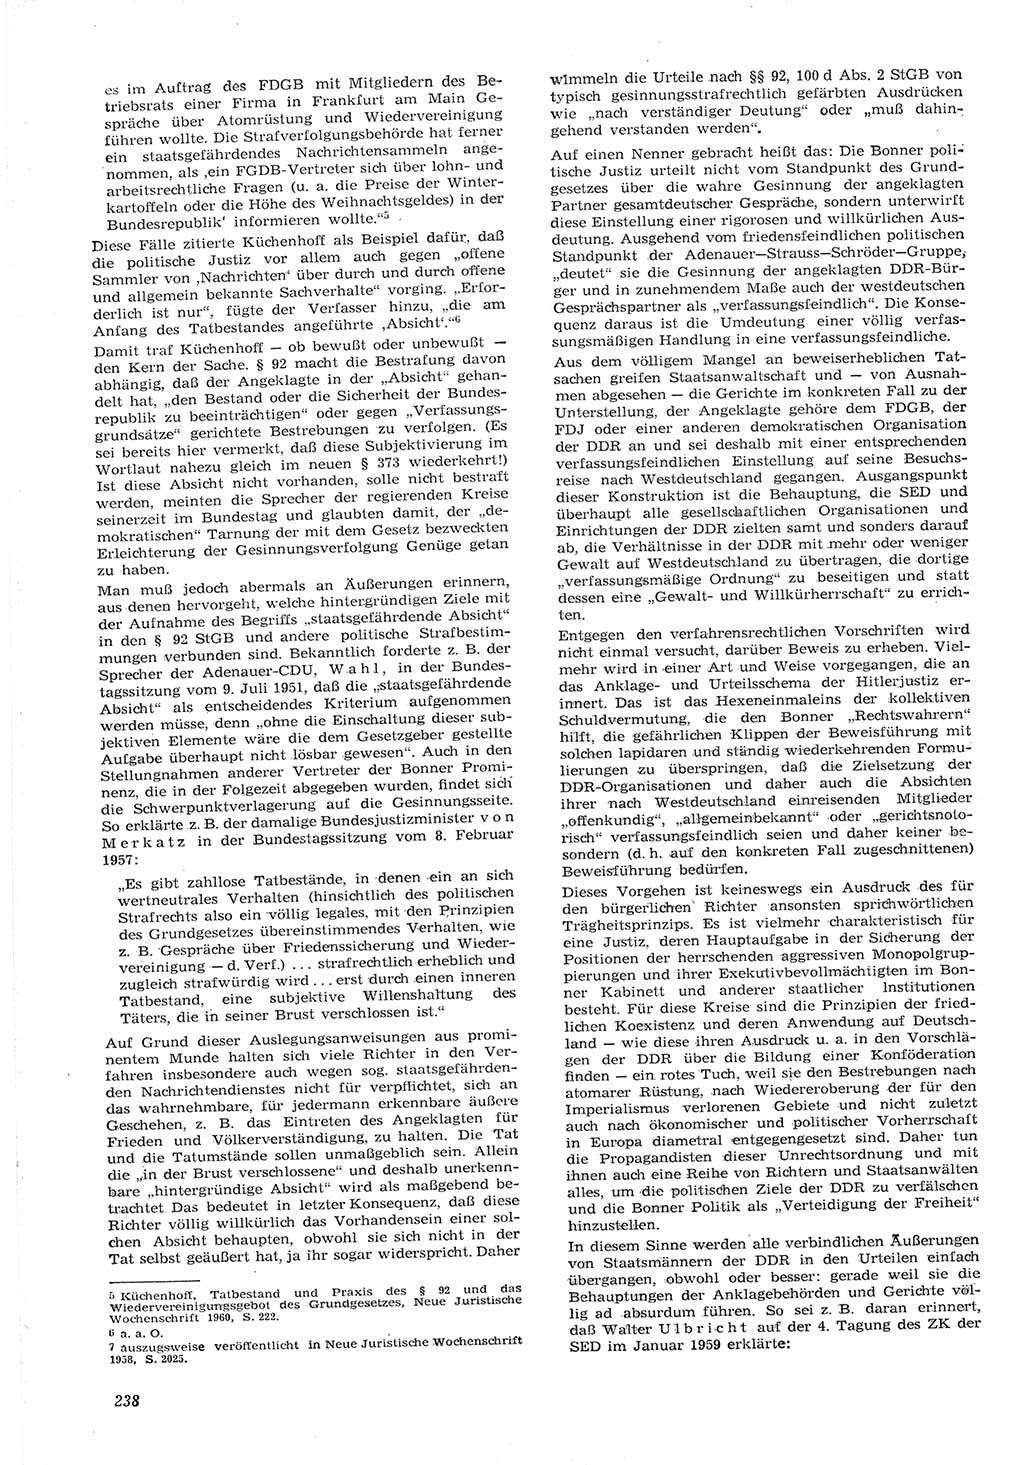 Neue Justiz (NJ), Zeitschrift für Recht und Rechtswissenschaft [Deutsche Demokratische Republik (DDR)], 15. Jahrgang 1961, Seite 238 (NJ DDR 1961, S. 238)